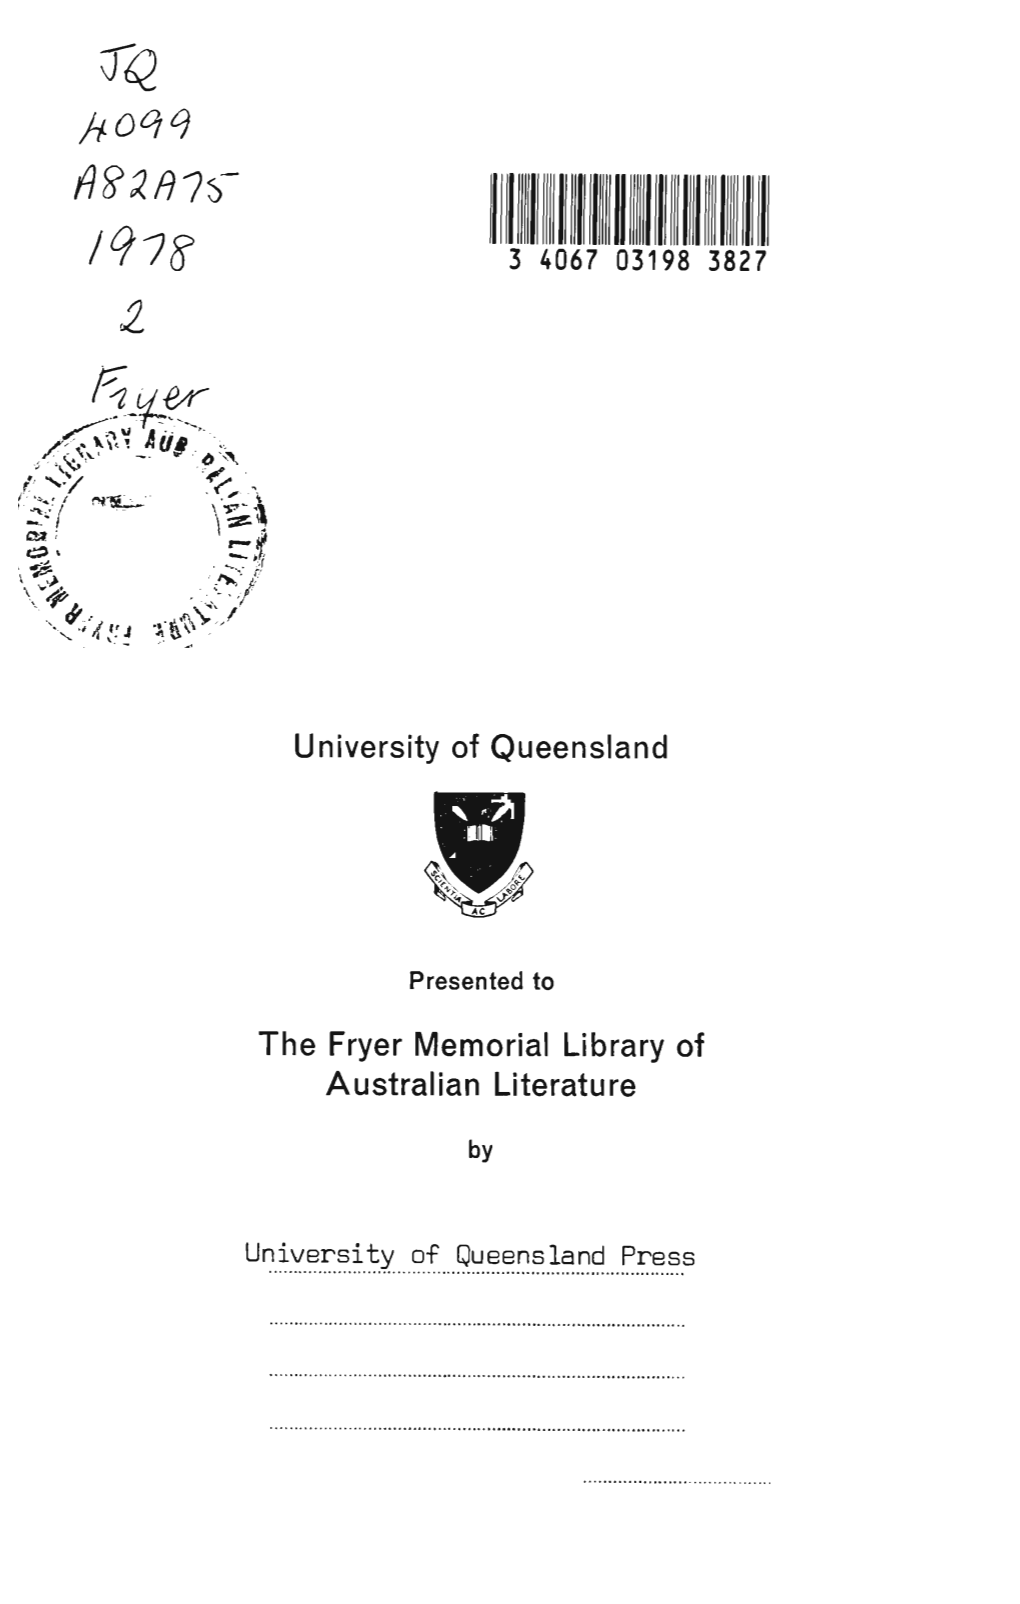 University of Queensland the Fryer Iviemorial Library Of